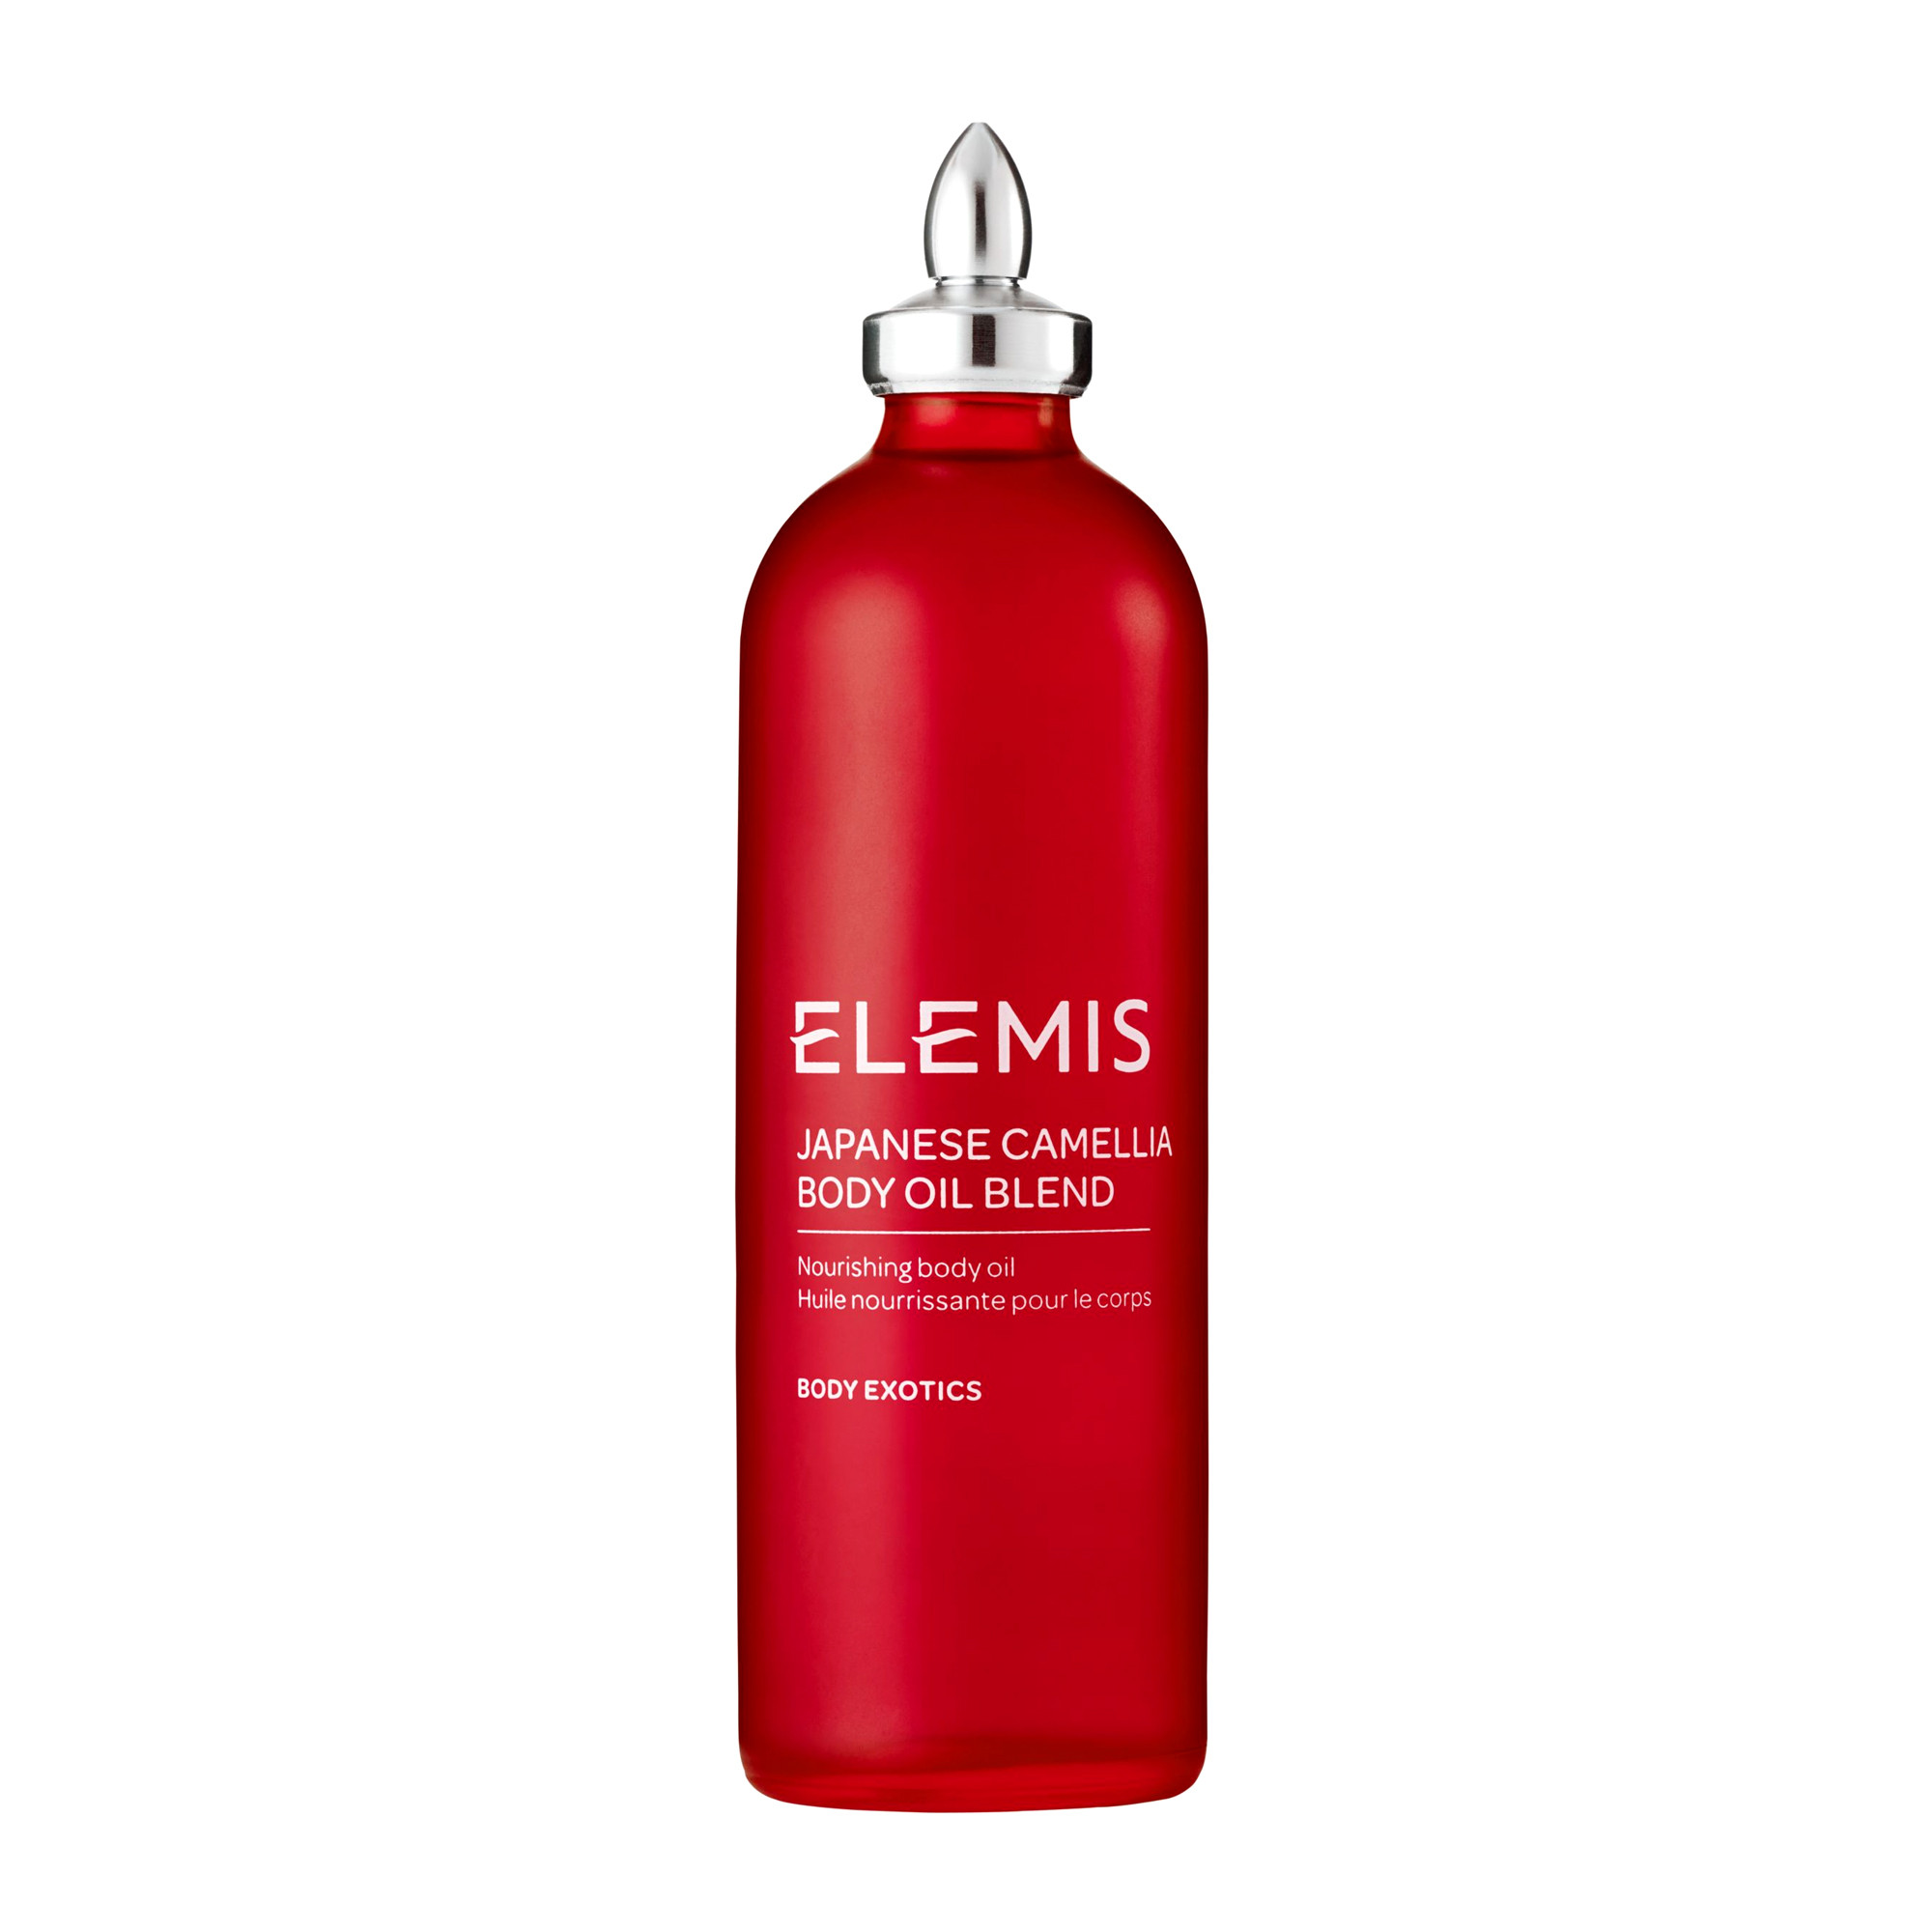 Отзывы о Elemis Japanese Camellia Body Oil Blend - Регенерирующее масло для тела Японская Камелия